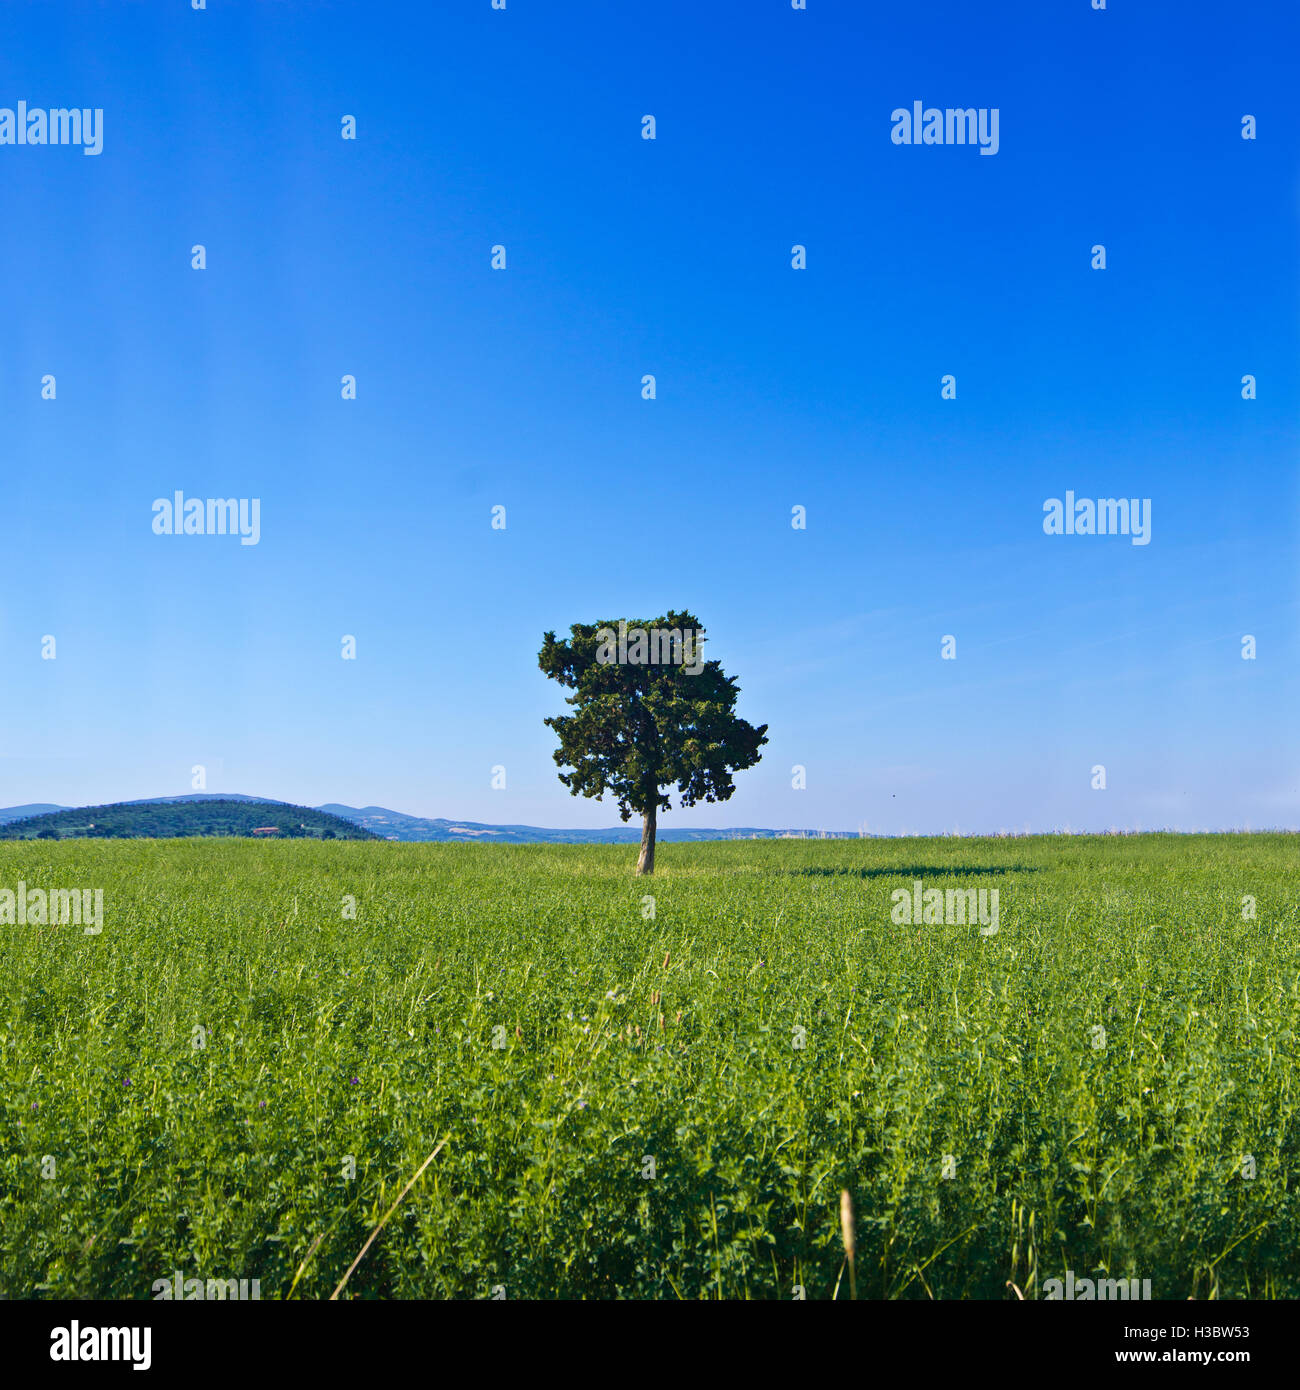 Albero isolato in mezzo a un campo coltivato con le colline in background Foto Stock